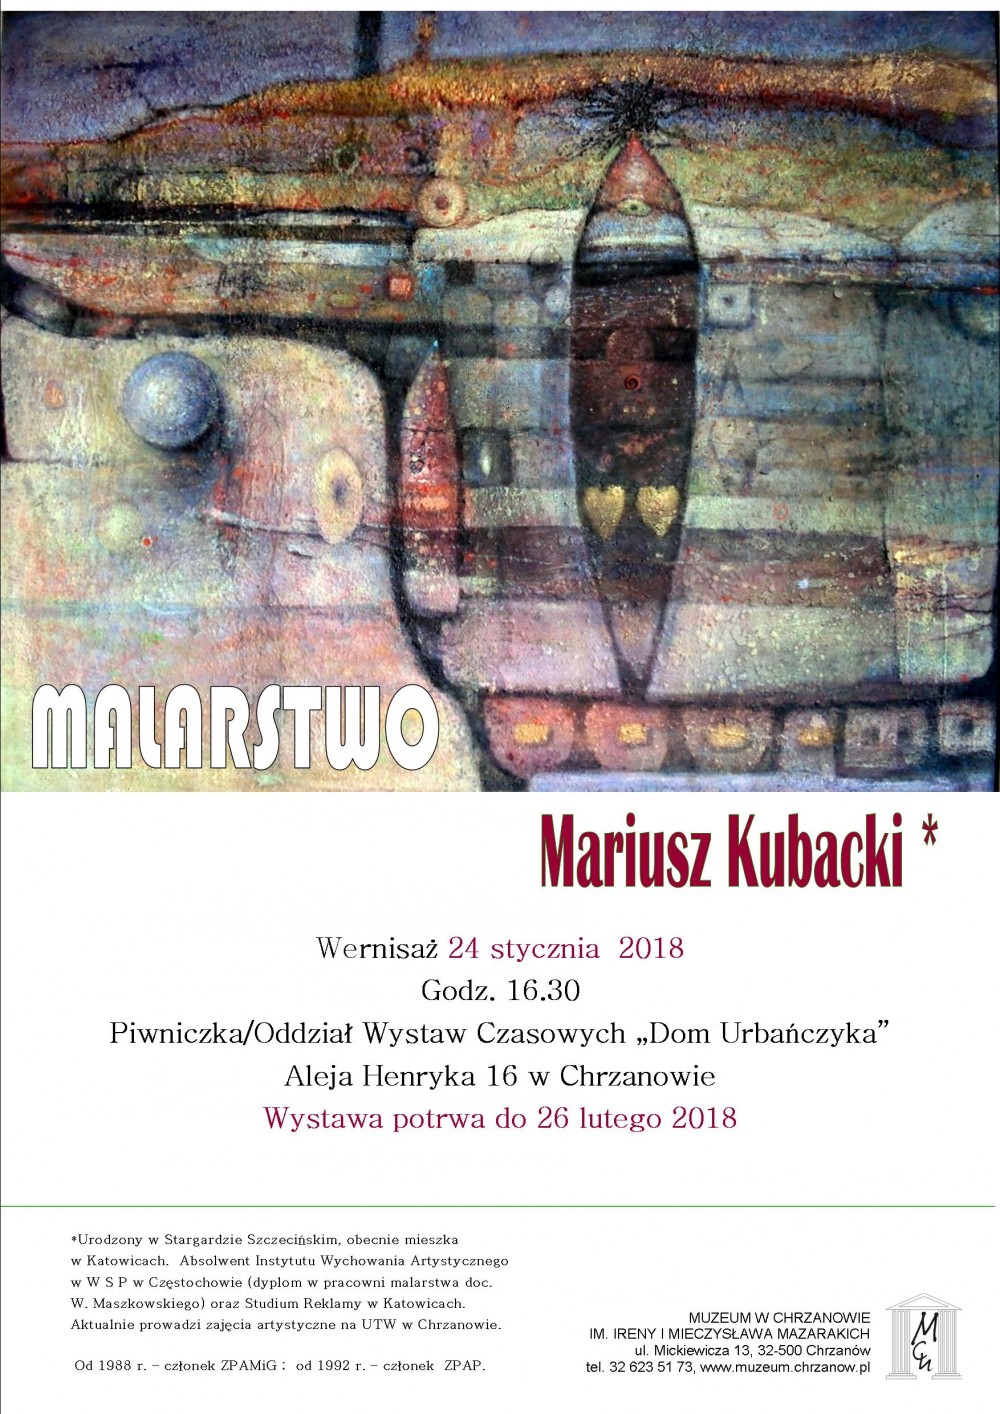 MALARSTWO - MARIUSZ KUBACKI